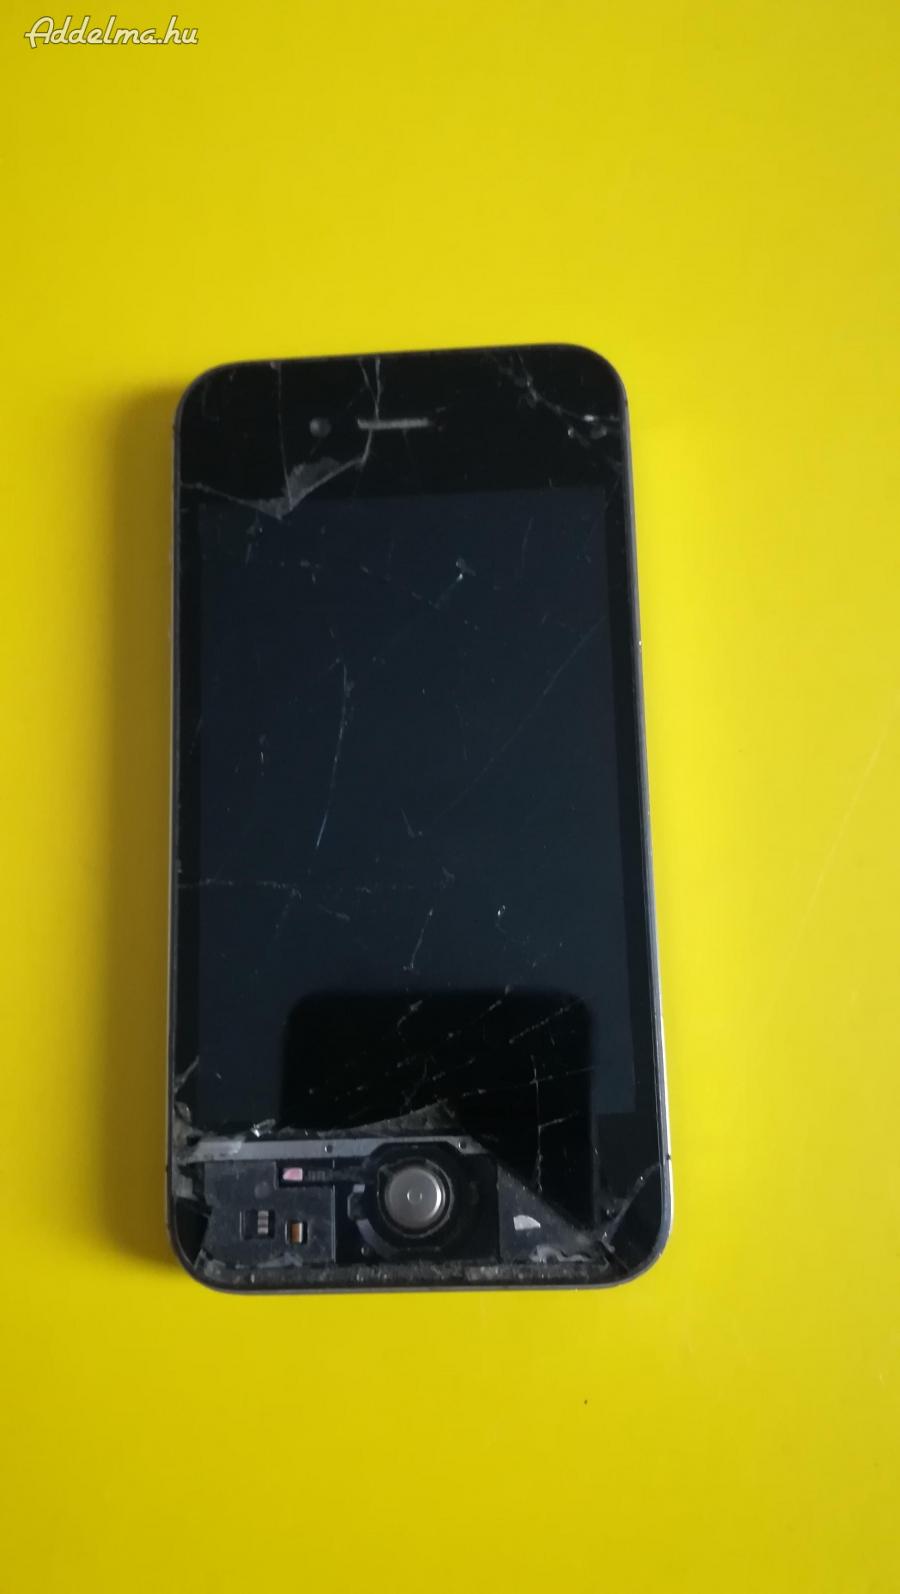 Iphone 4 model a1387 mobil, törött kijelzős, töltö nin